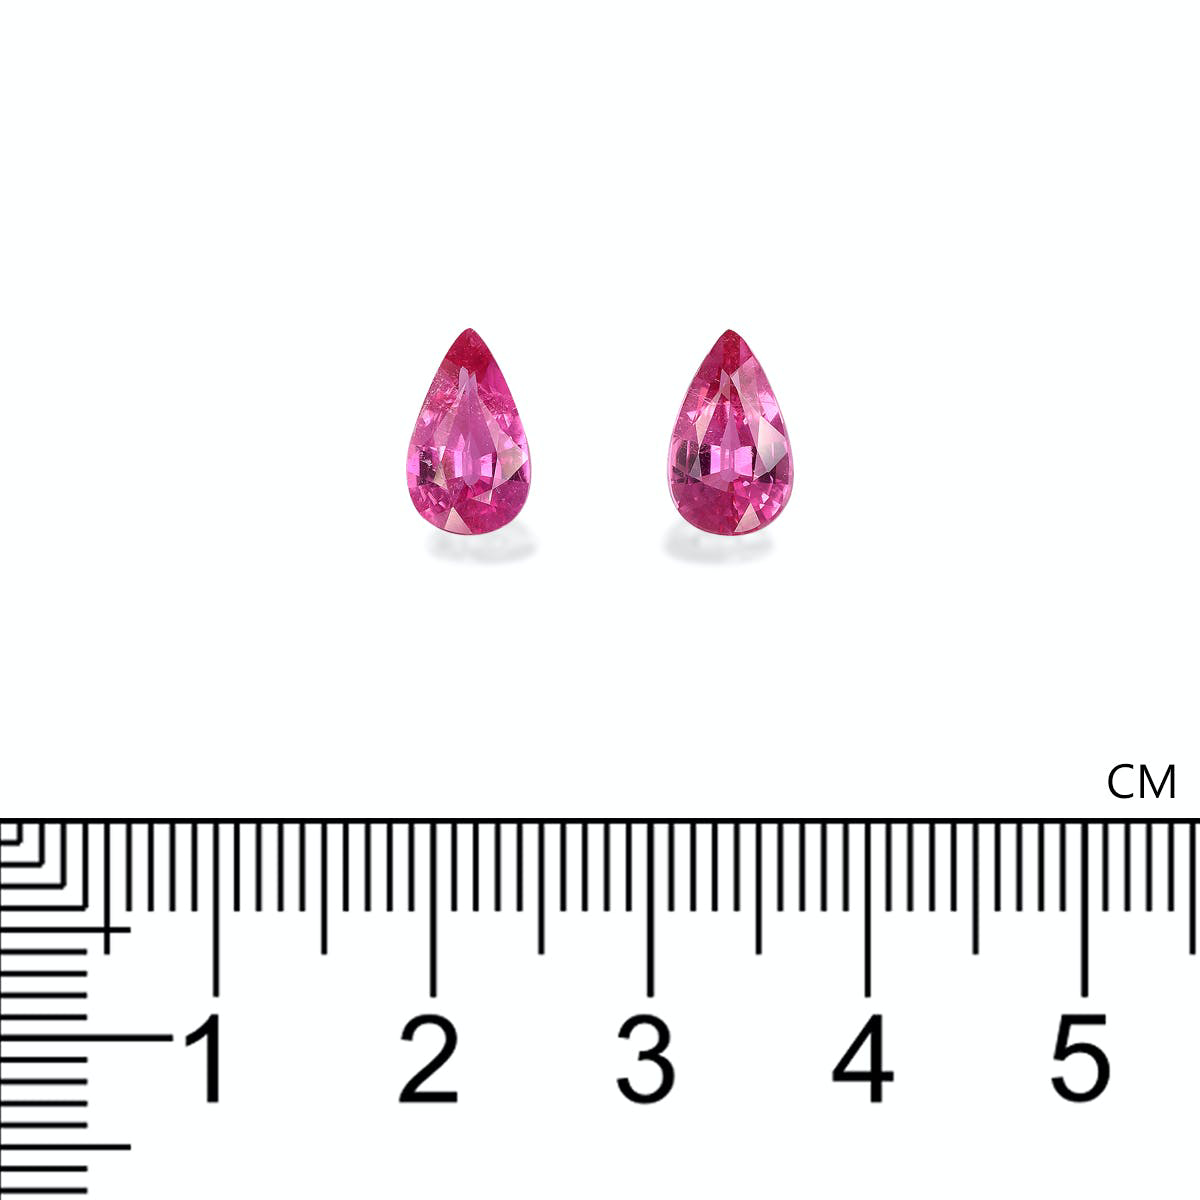 Fuscia Pink Rubellite Tourmaline 2.39ct - Pair (RL1288)